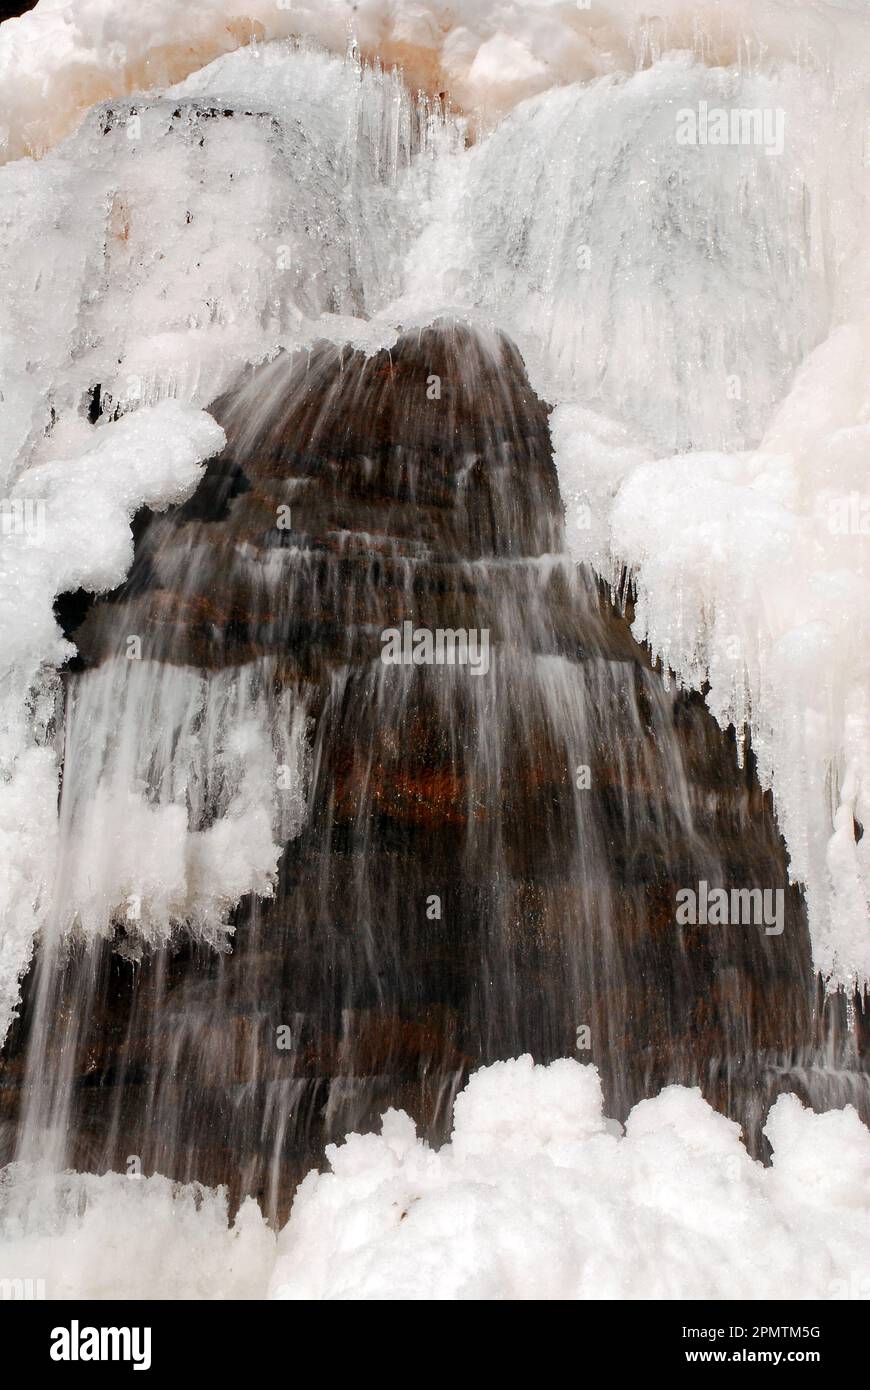 Durante una fredda giornata invernale, l'acqua proveniente da una cascata continua a fluire, nonostante lo strato superficiale sia congelato Foto Stock